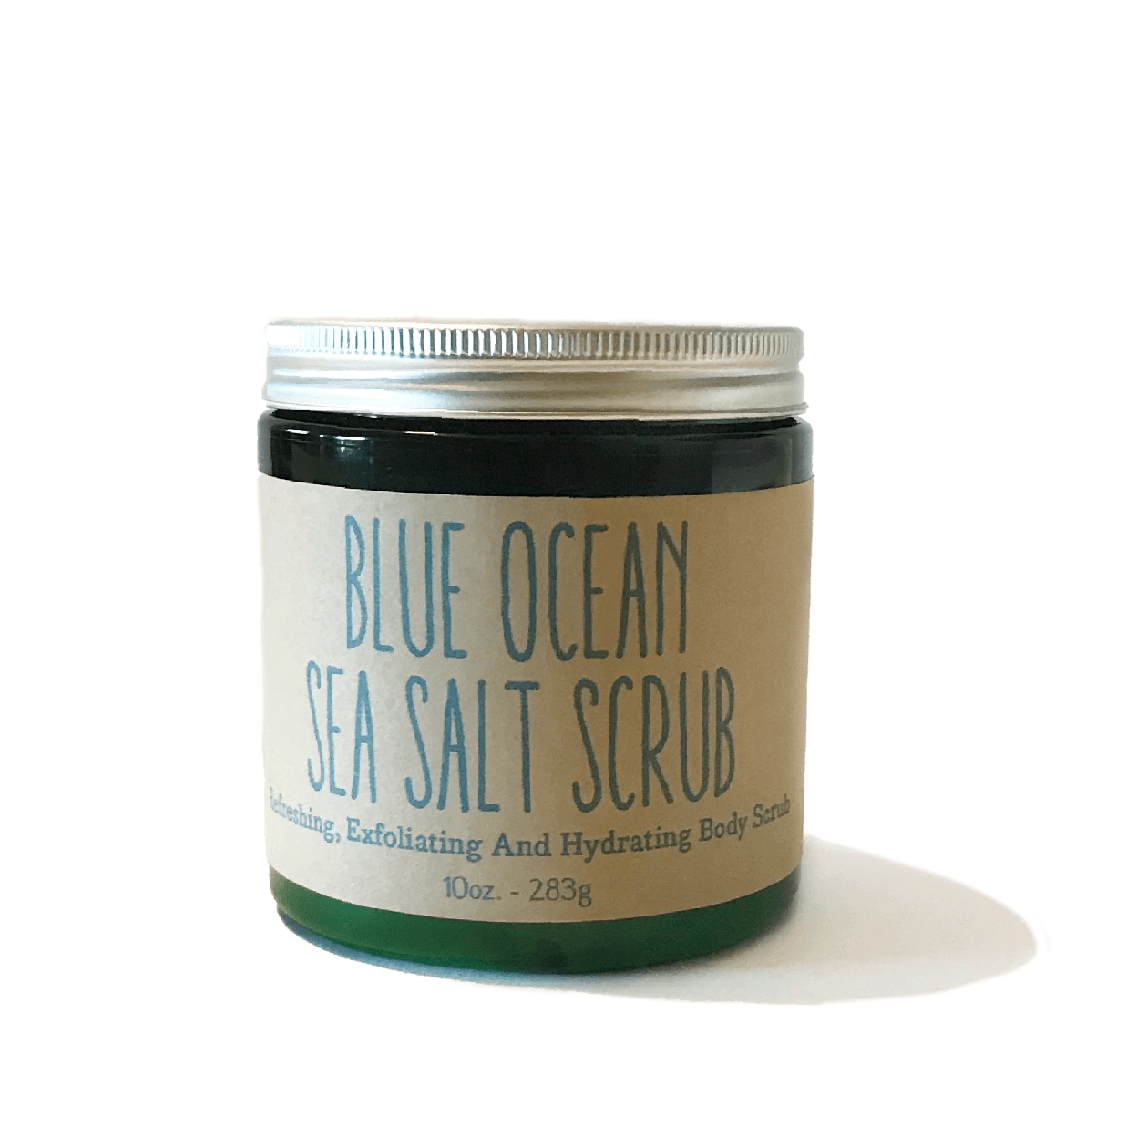 Blue Ocean Sea Salt Body Scrub 10oz - Radiant Crush